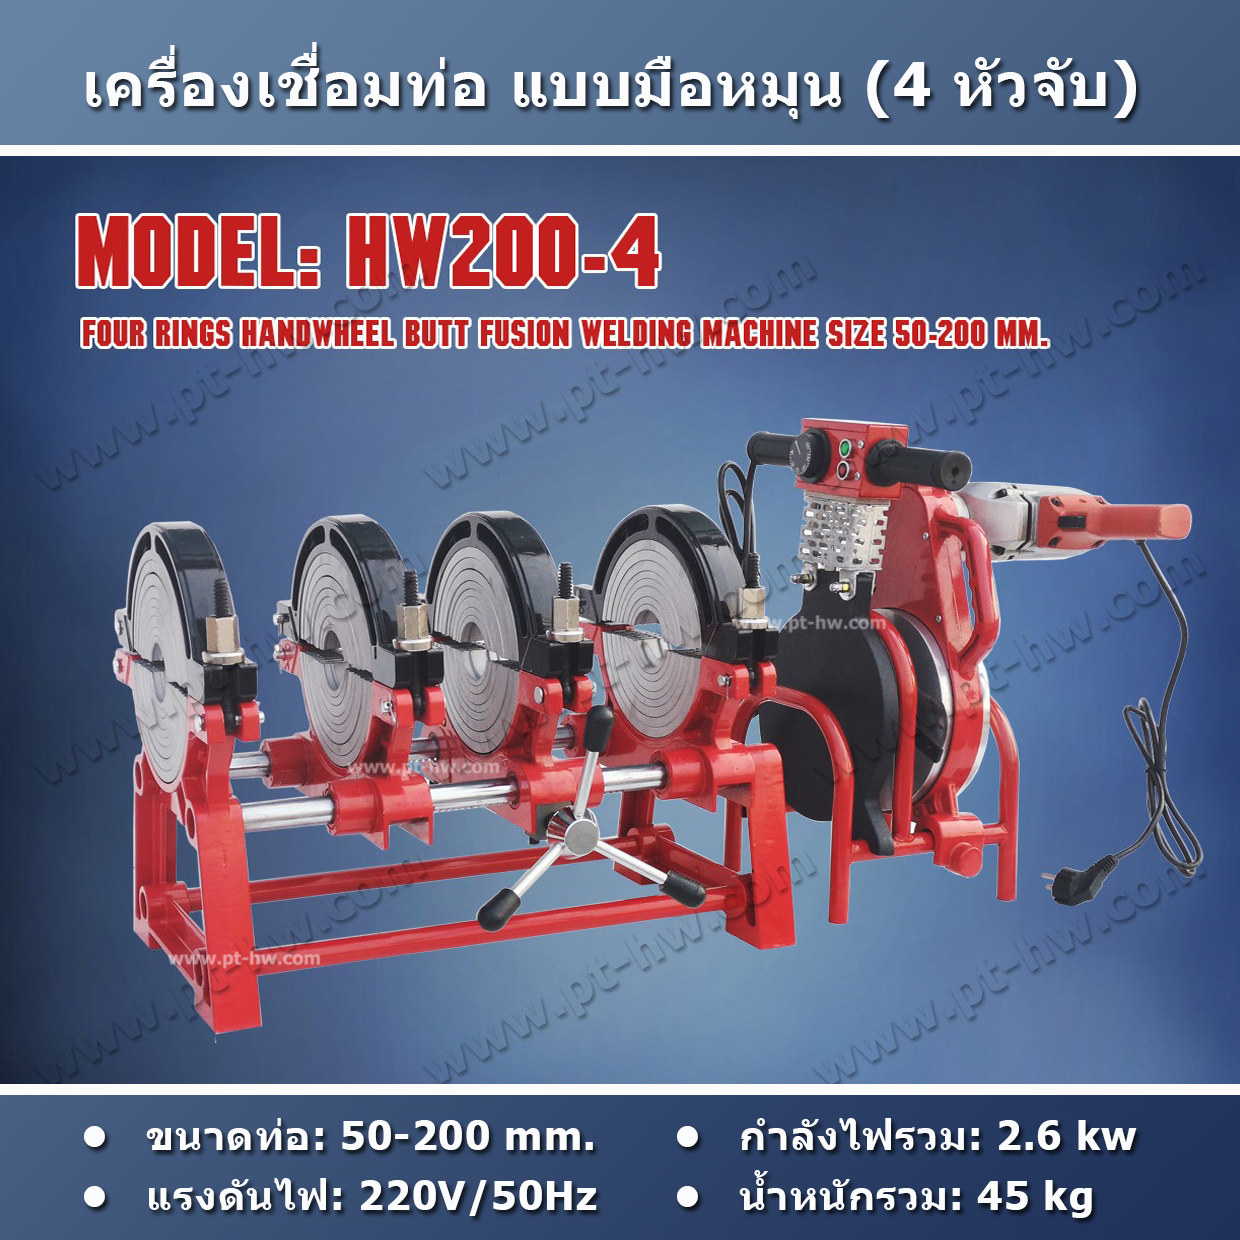 เครื่องเชื่อมท่อ HDPE 200 mm. รุ่น HW200-4